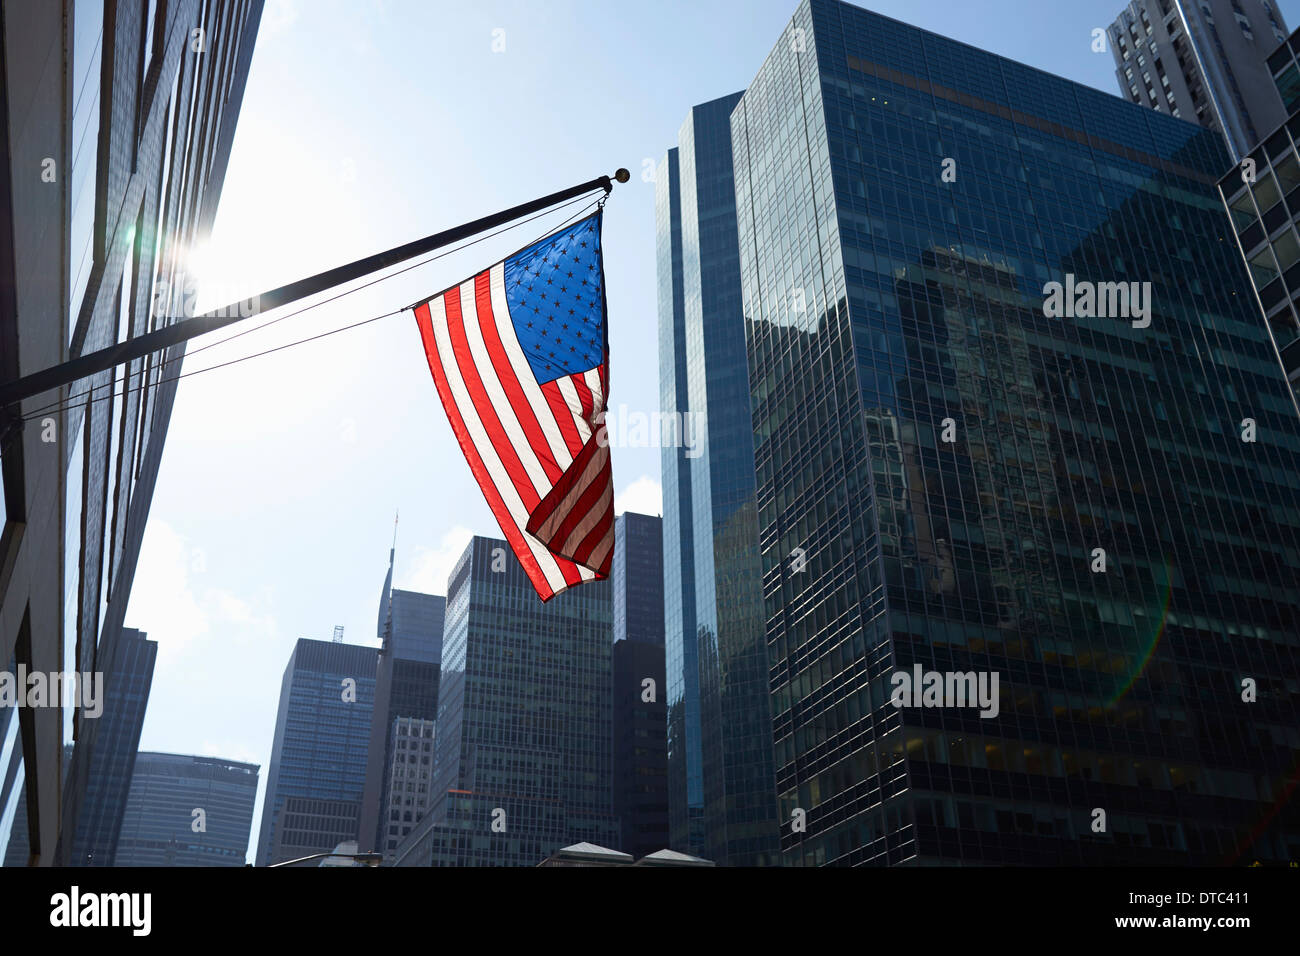 Drapeau américain et les édifices à bureaux, Manhattan, New York, USA Banque D'Images